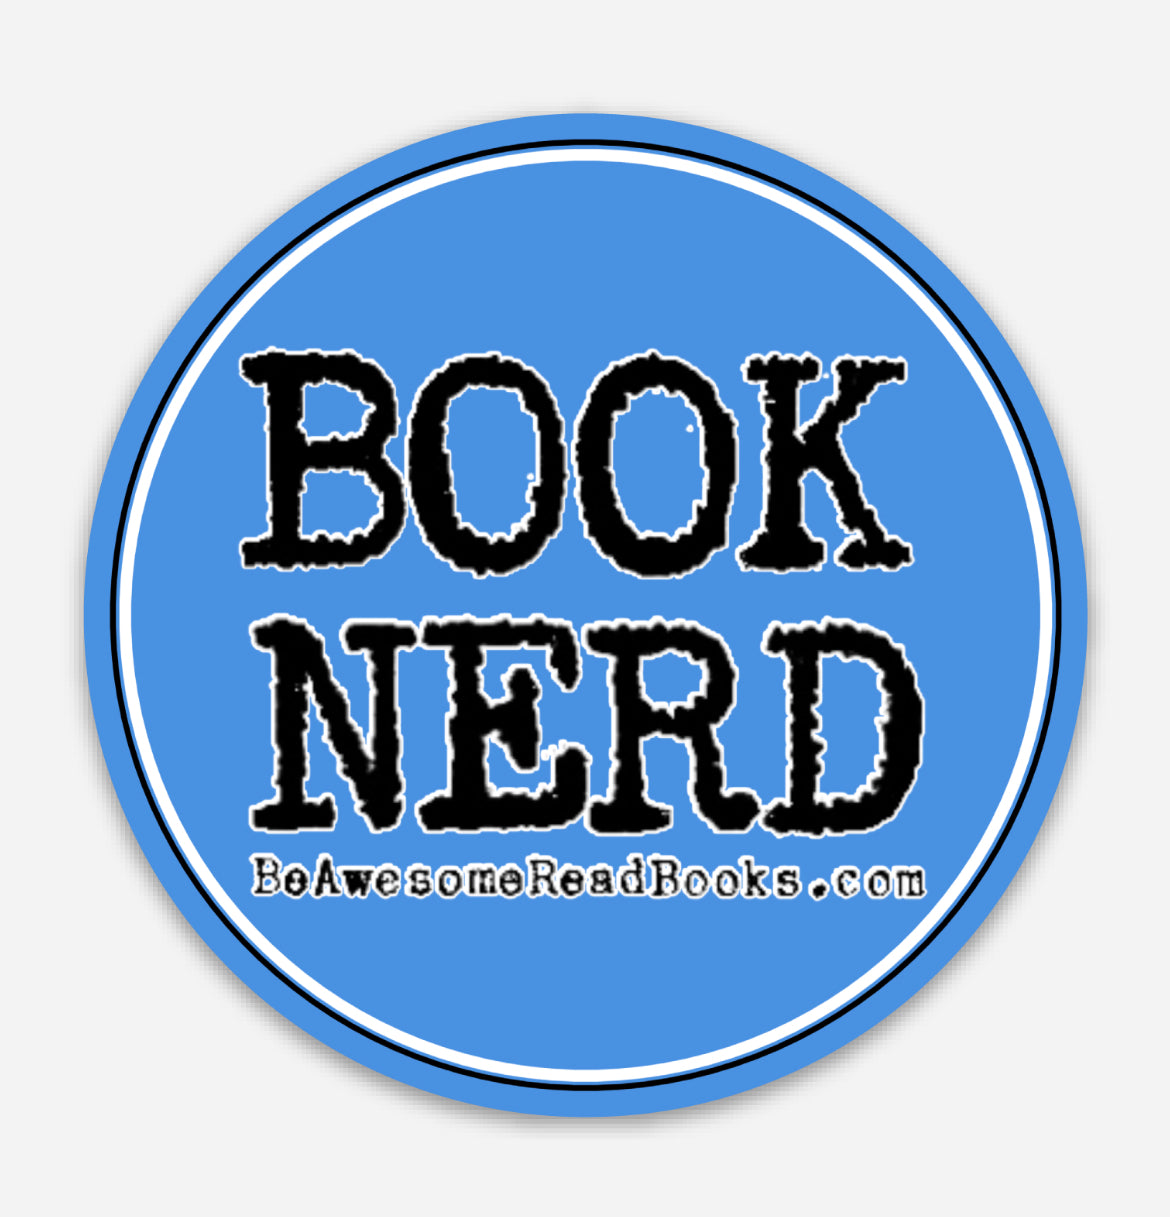 Book Nerd Round Sticker